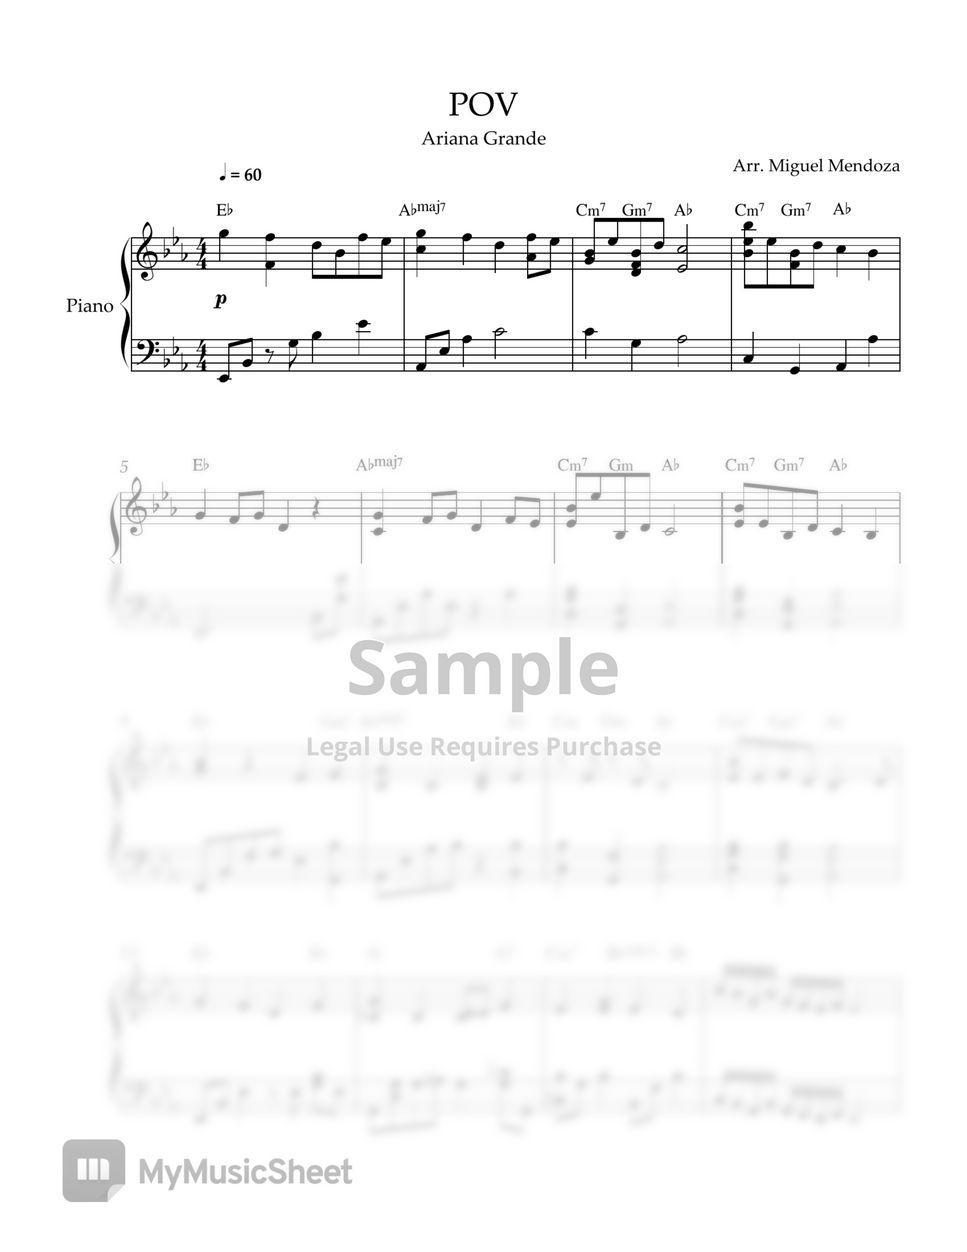 Ariana Grande - pov (Cello & Piano) by Vesislava